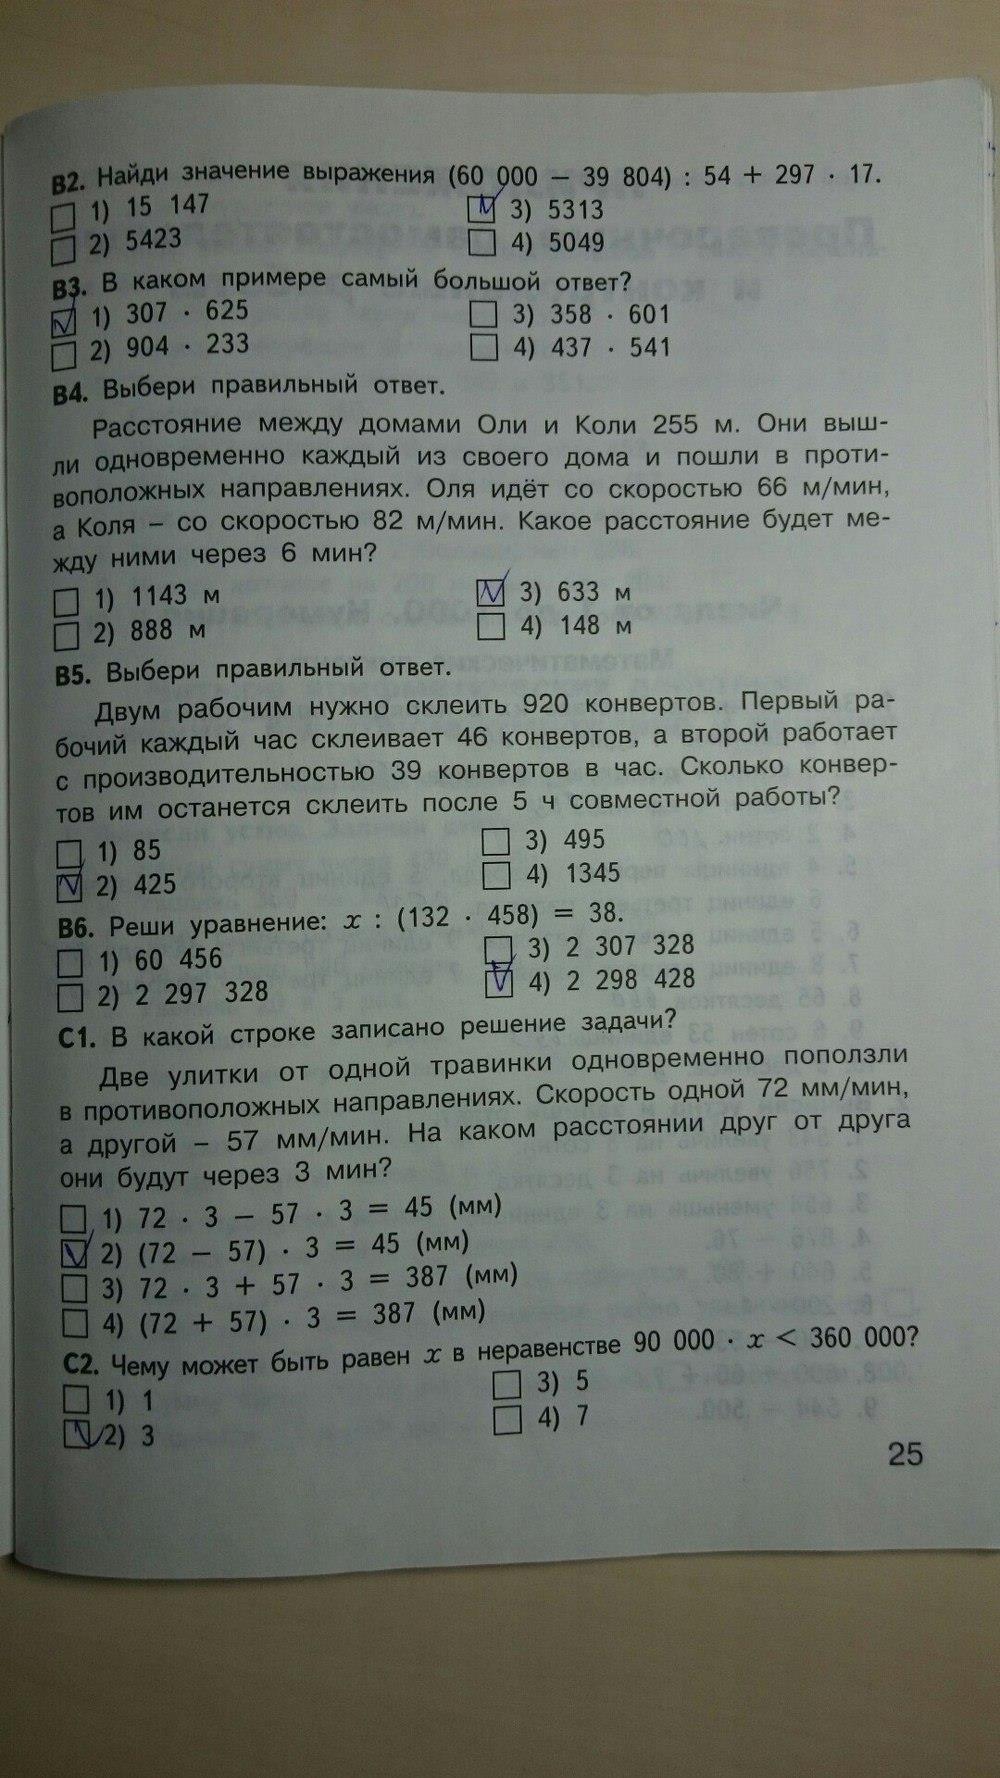 гдз 4 класс контрольно-измерительные материалы страница 25 математика Ситникова